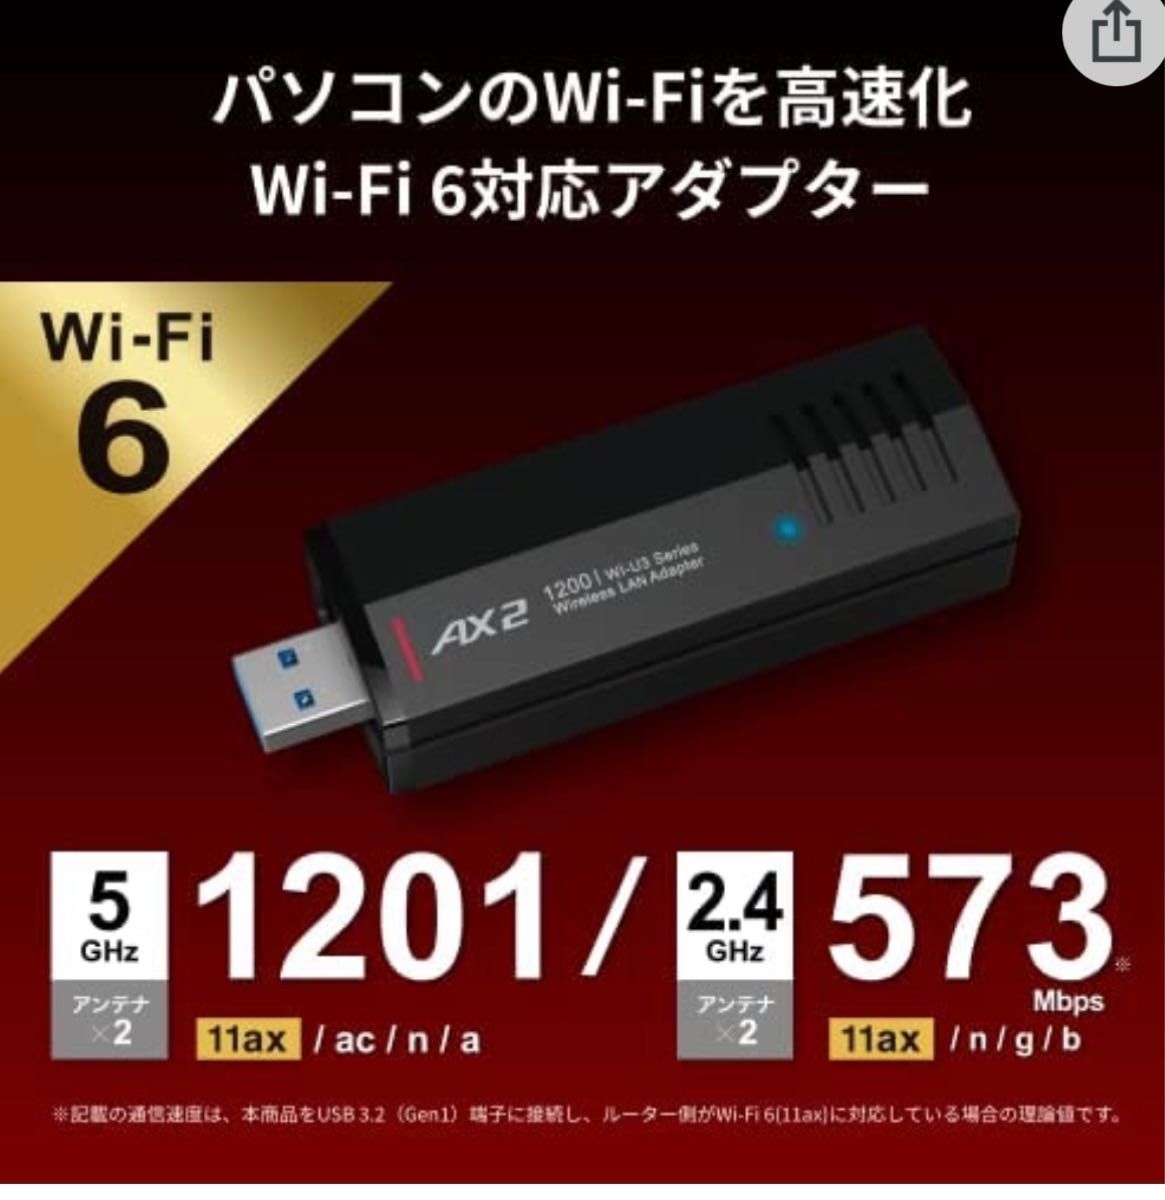 美品★パソコンを最新規格「Wi-Fi 6(11ax)」にアップグレード USB端子に装着して高速化★WI-U3-1200AX2